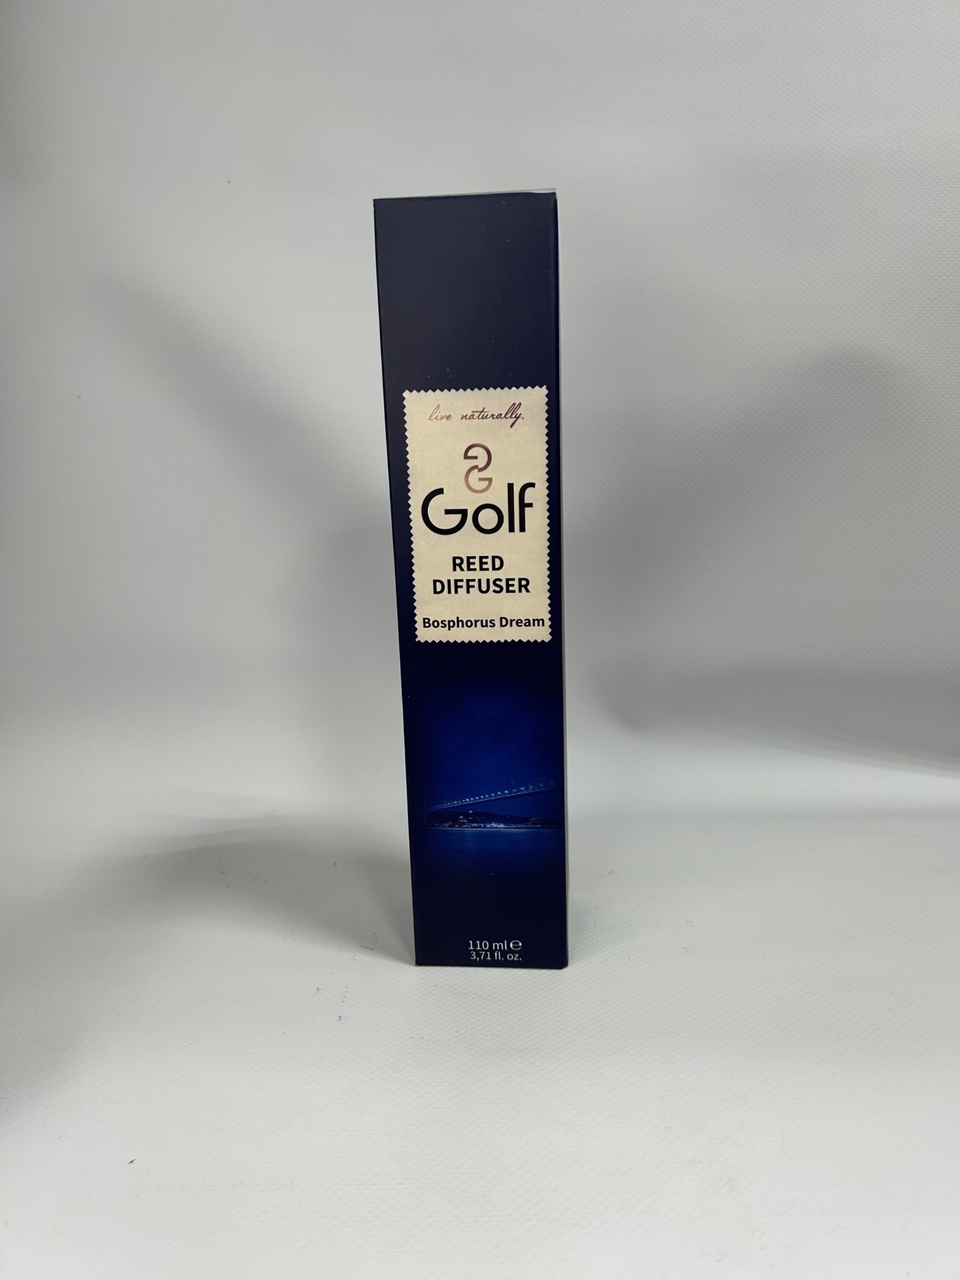 Ароматический диффузор Golf “Босфорская мечта”, 110ml - 550 ₽, заказать онлайн.